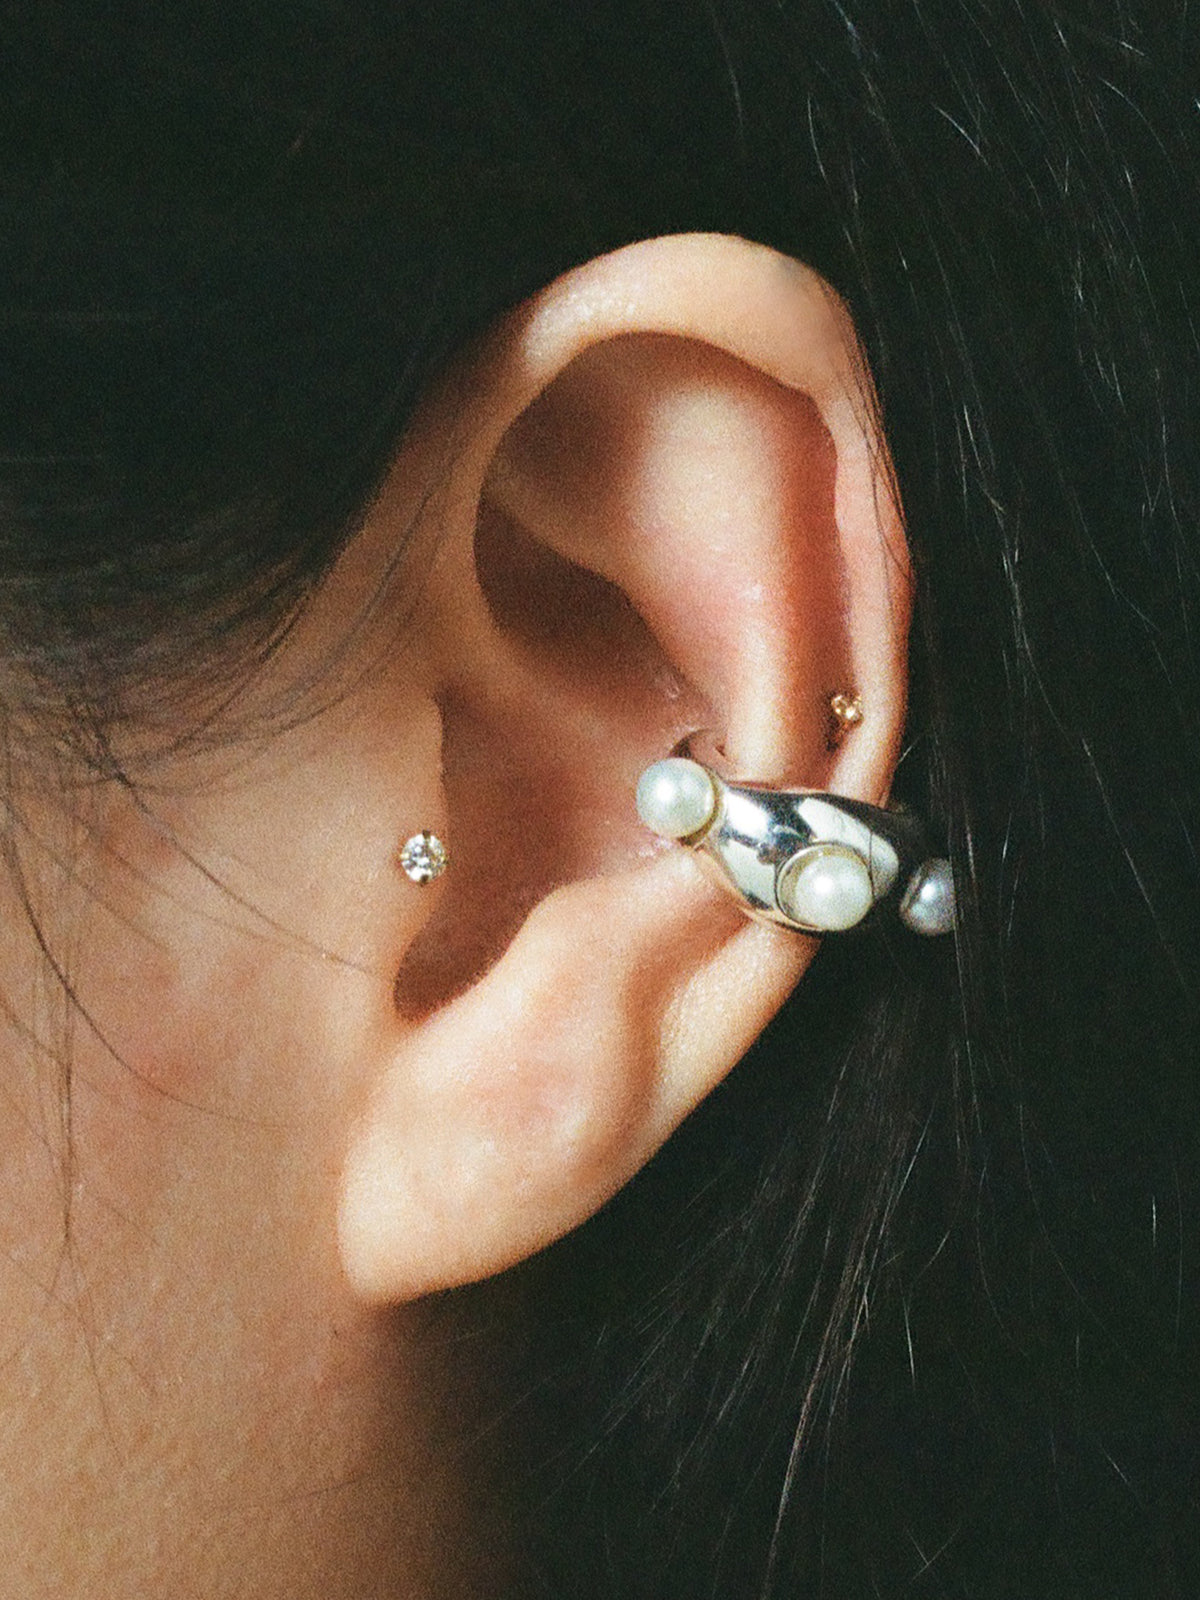 Model wearing sterling silver GROSSO Perla ear cuff